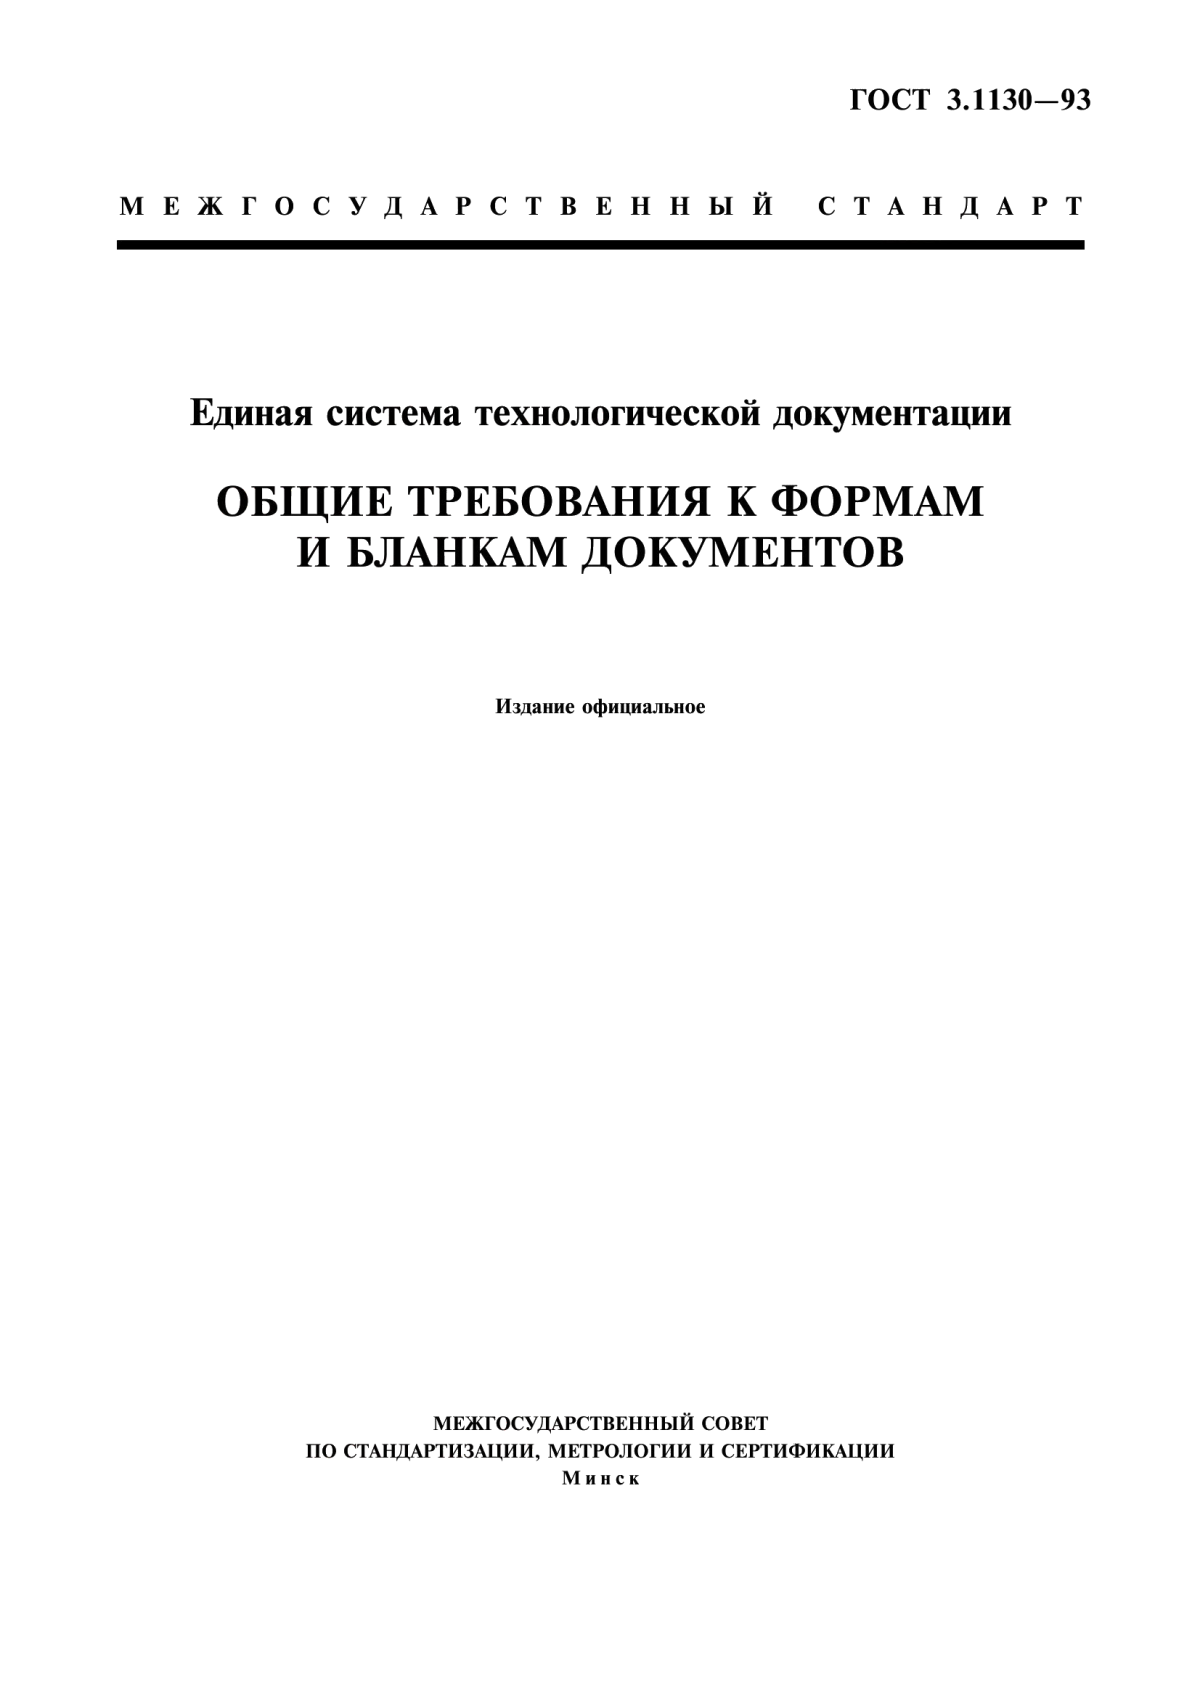 ГОСТ 3.1130-93 Единая система технологической документации. Общие требования к формам и бланкам документов